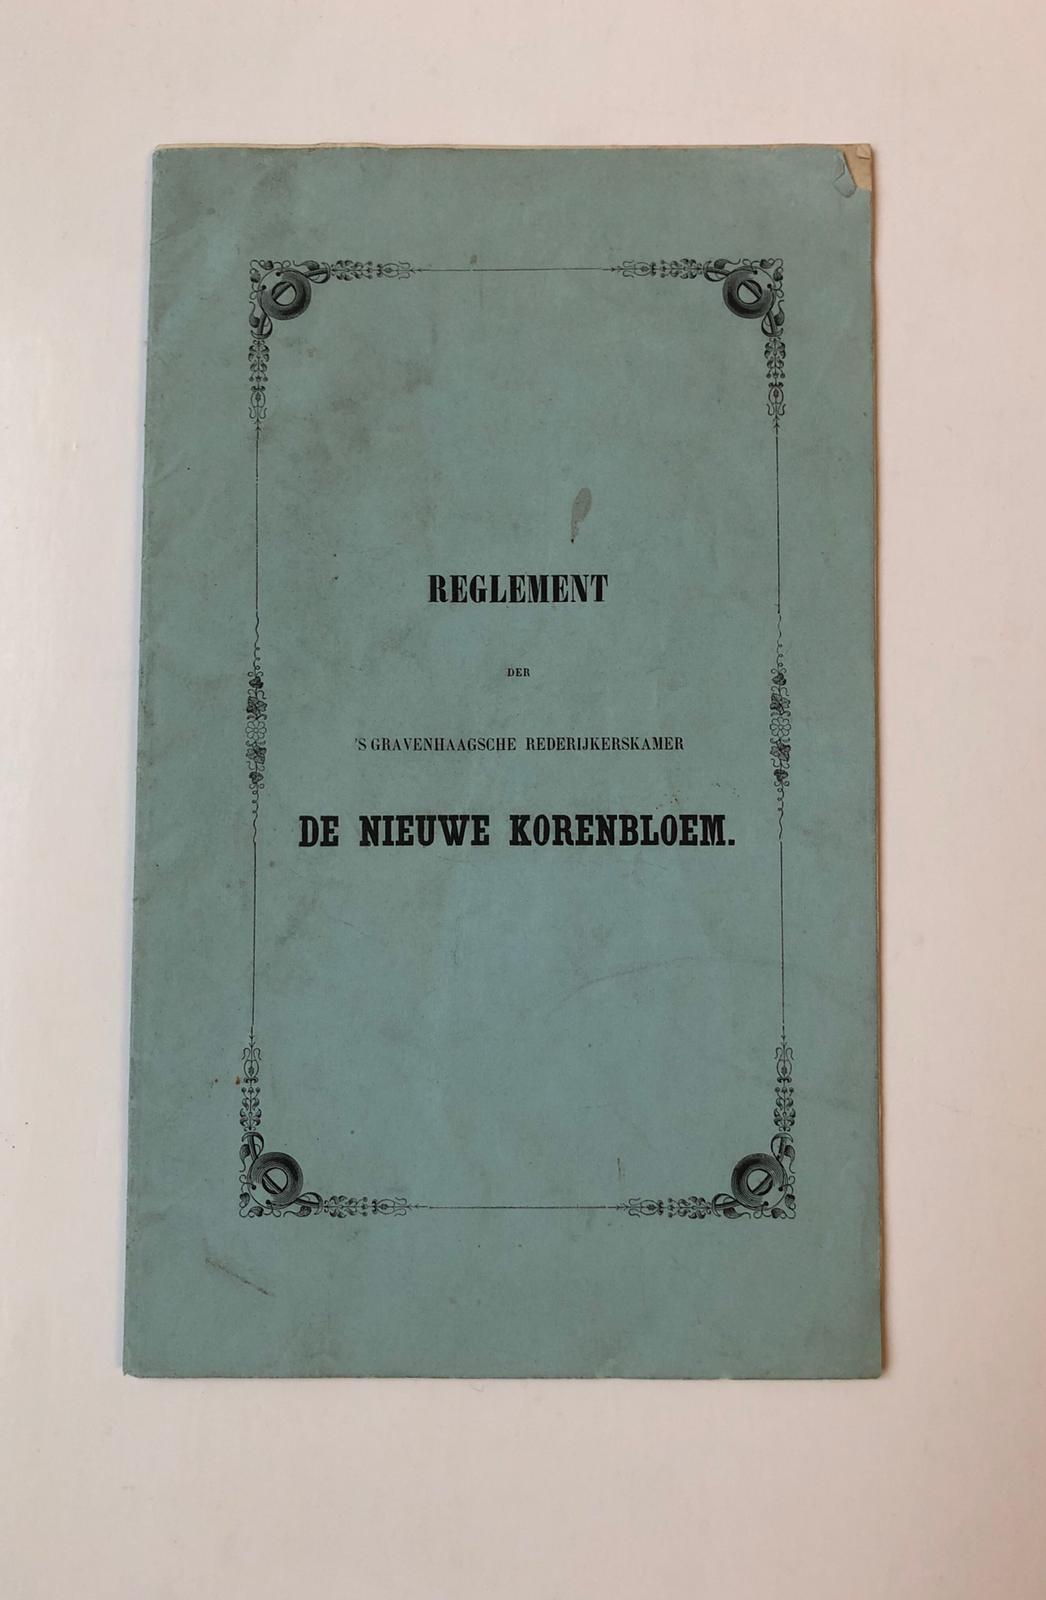  - GRAVENHAGE, REDERIJKERS, DE NIEUWE KORENBLOEM Reglement der s-Gravenhaagsche Rederijkerskamer De Nieuwe Korenbloem, [s-Gravenhage 1851], gedrukt, 8, 13 p.